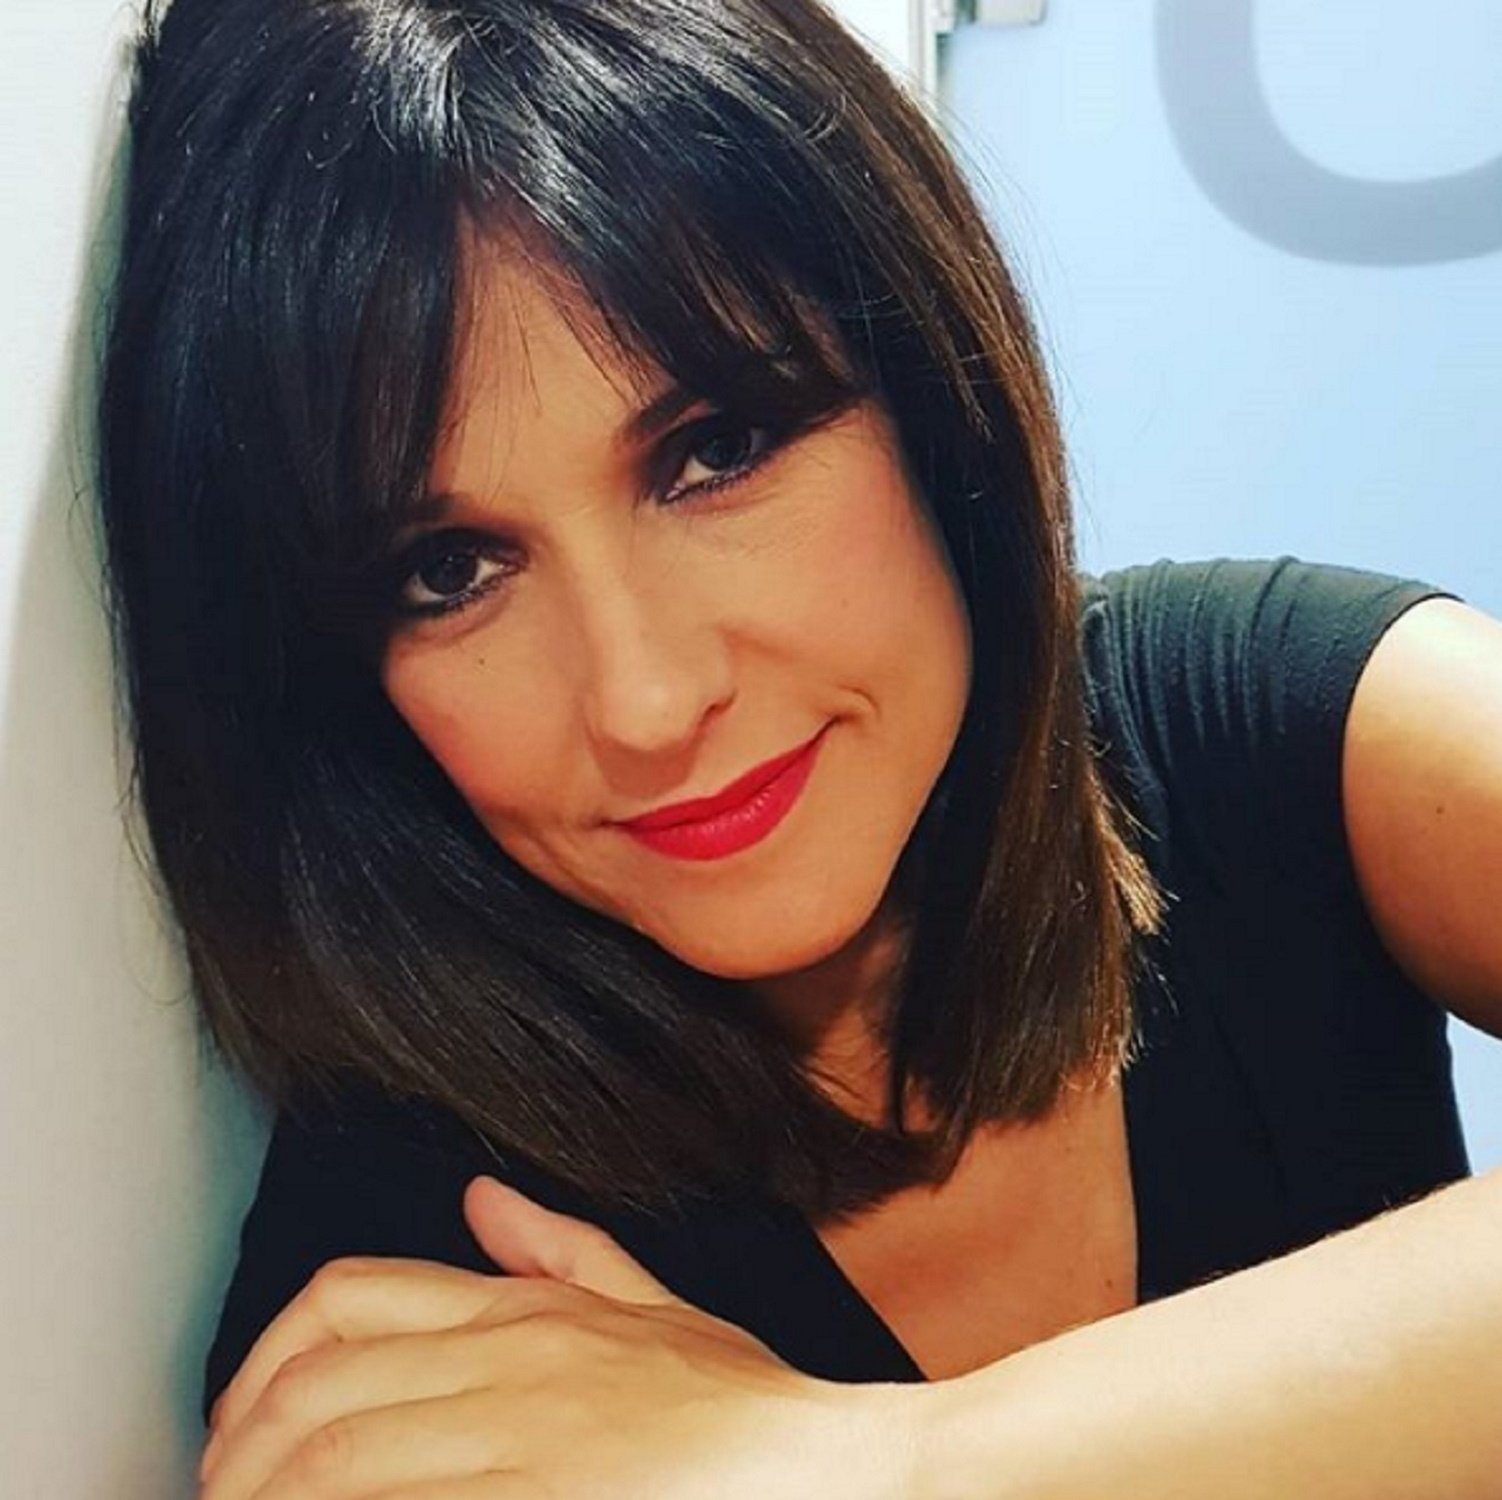 Així ha debutat Mònica López als matins de TVE: els ultres ja vomiten odi